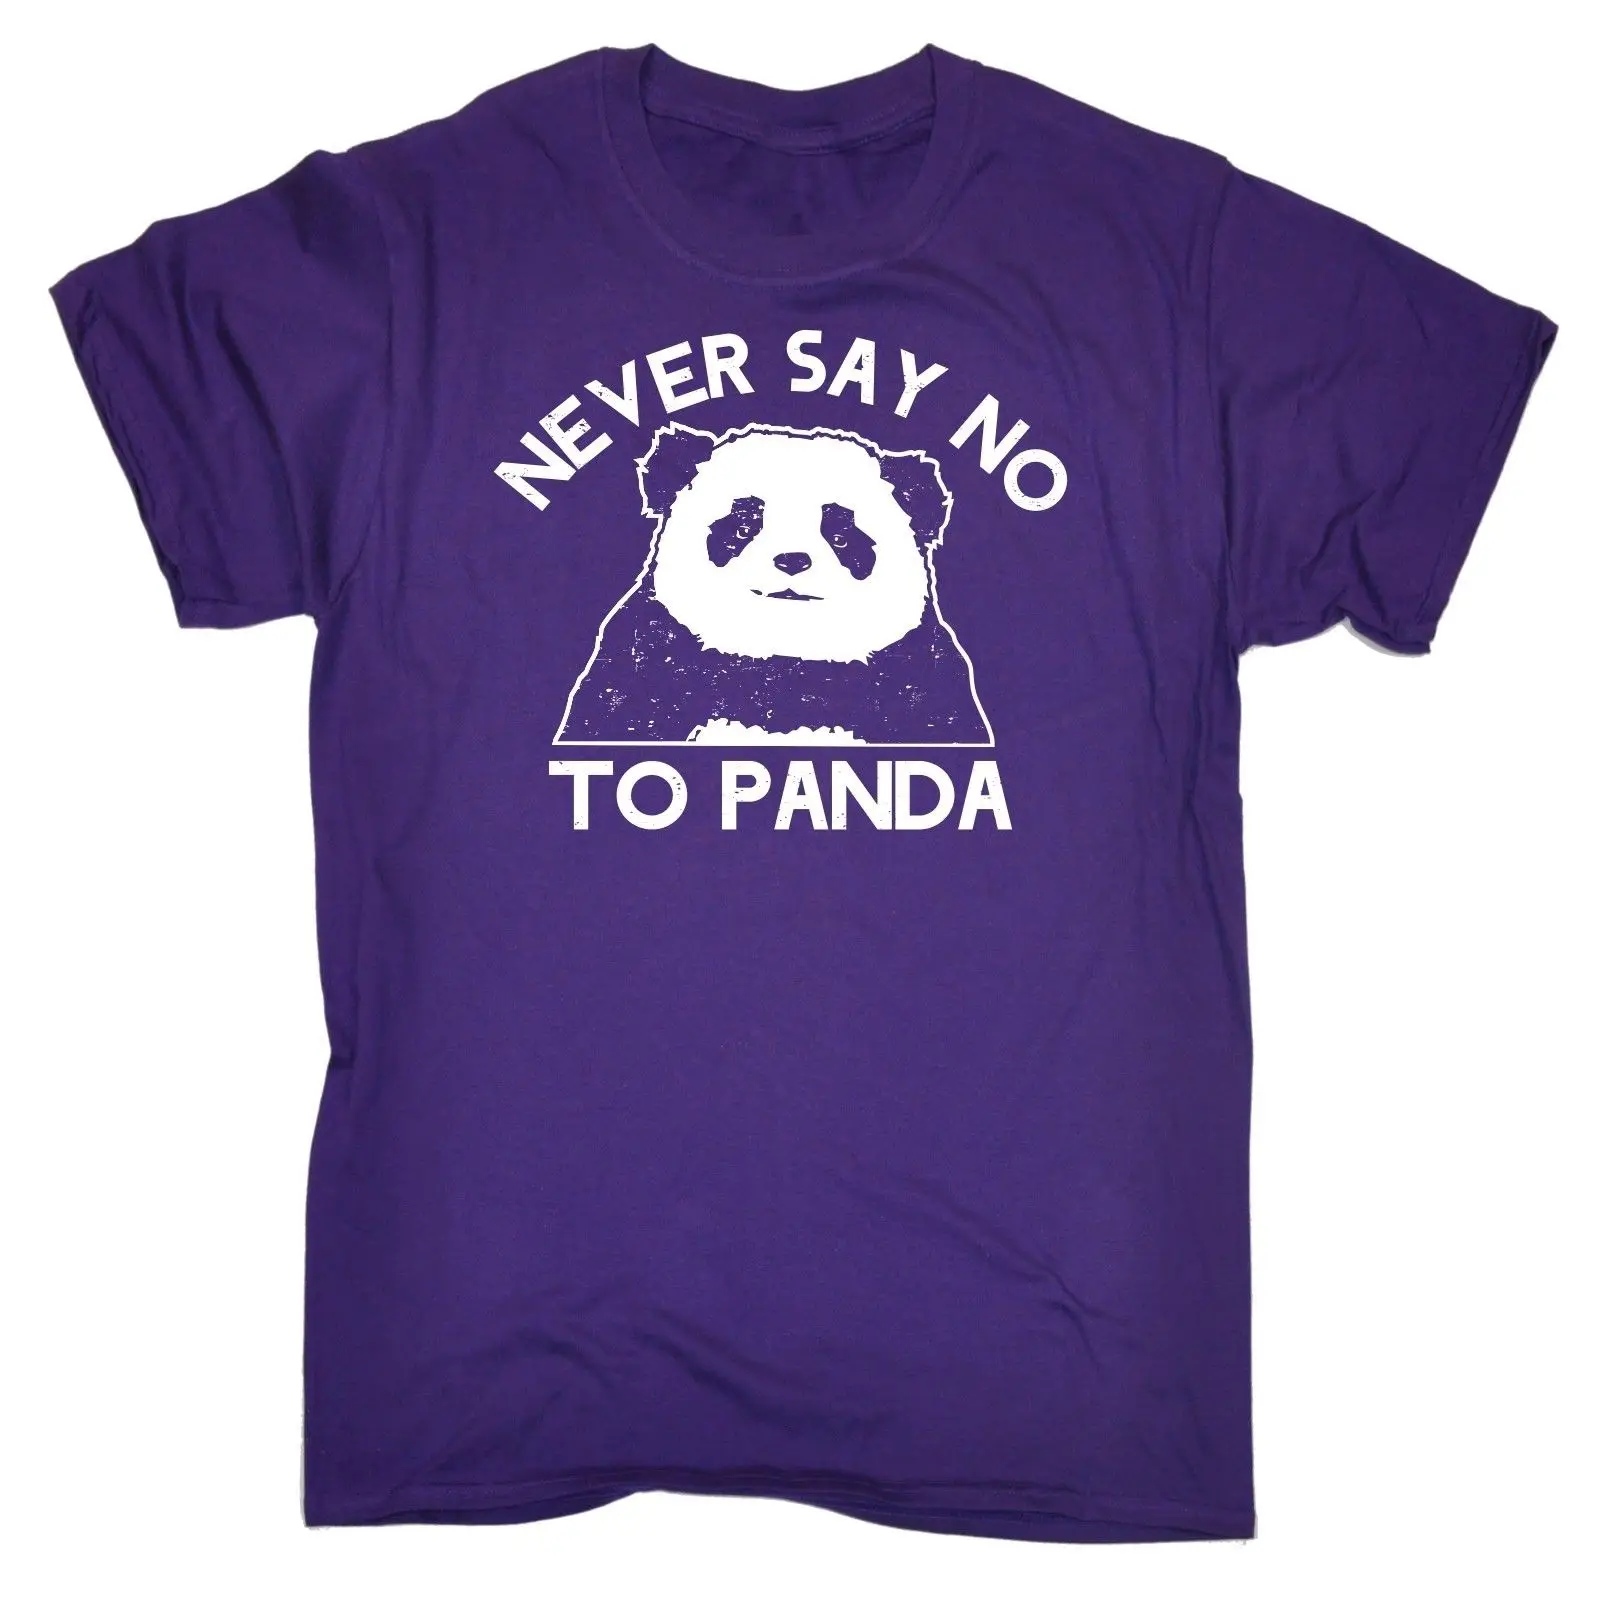 Футболка с надписью Never Say No To Panda Милая футболка изображением медведя забавный